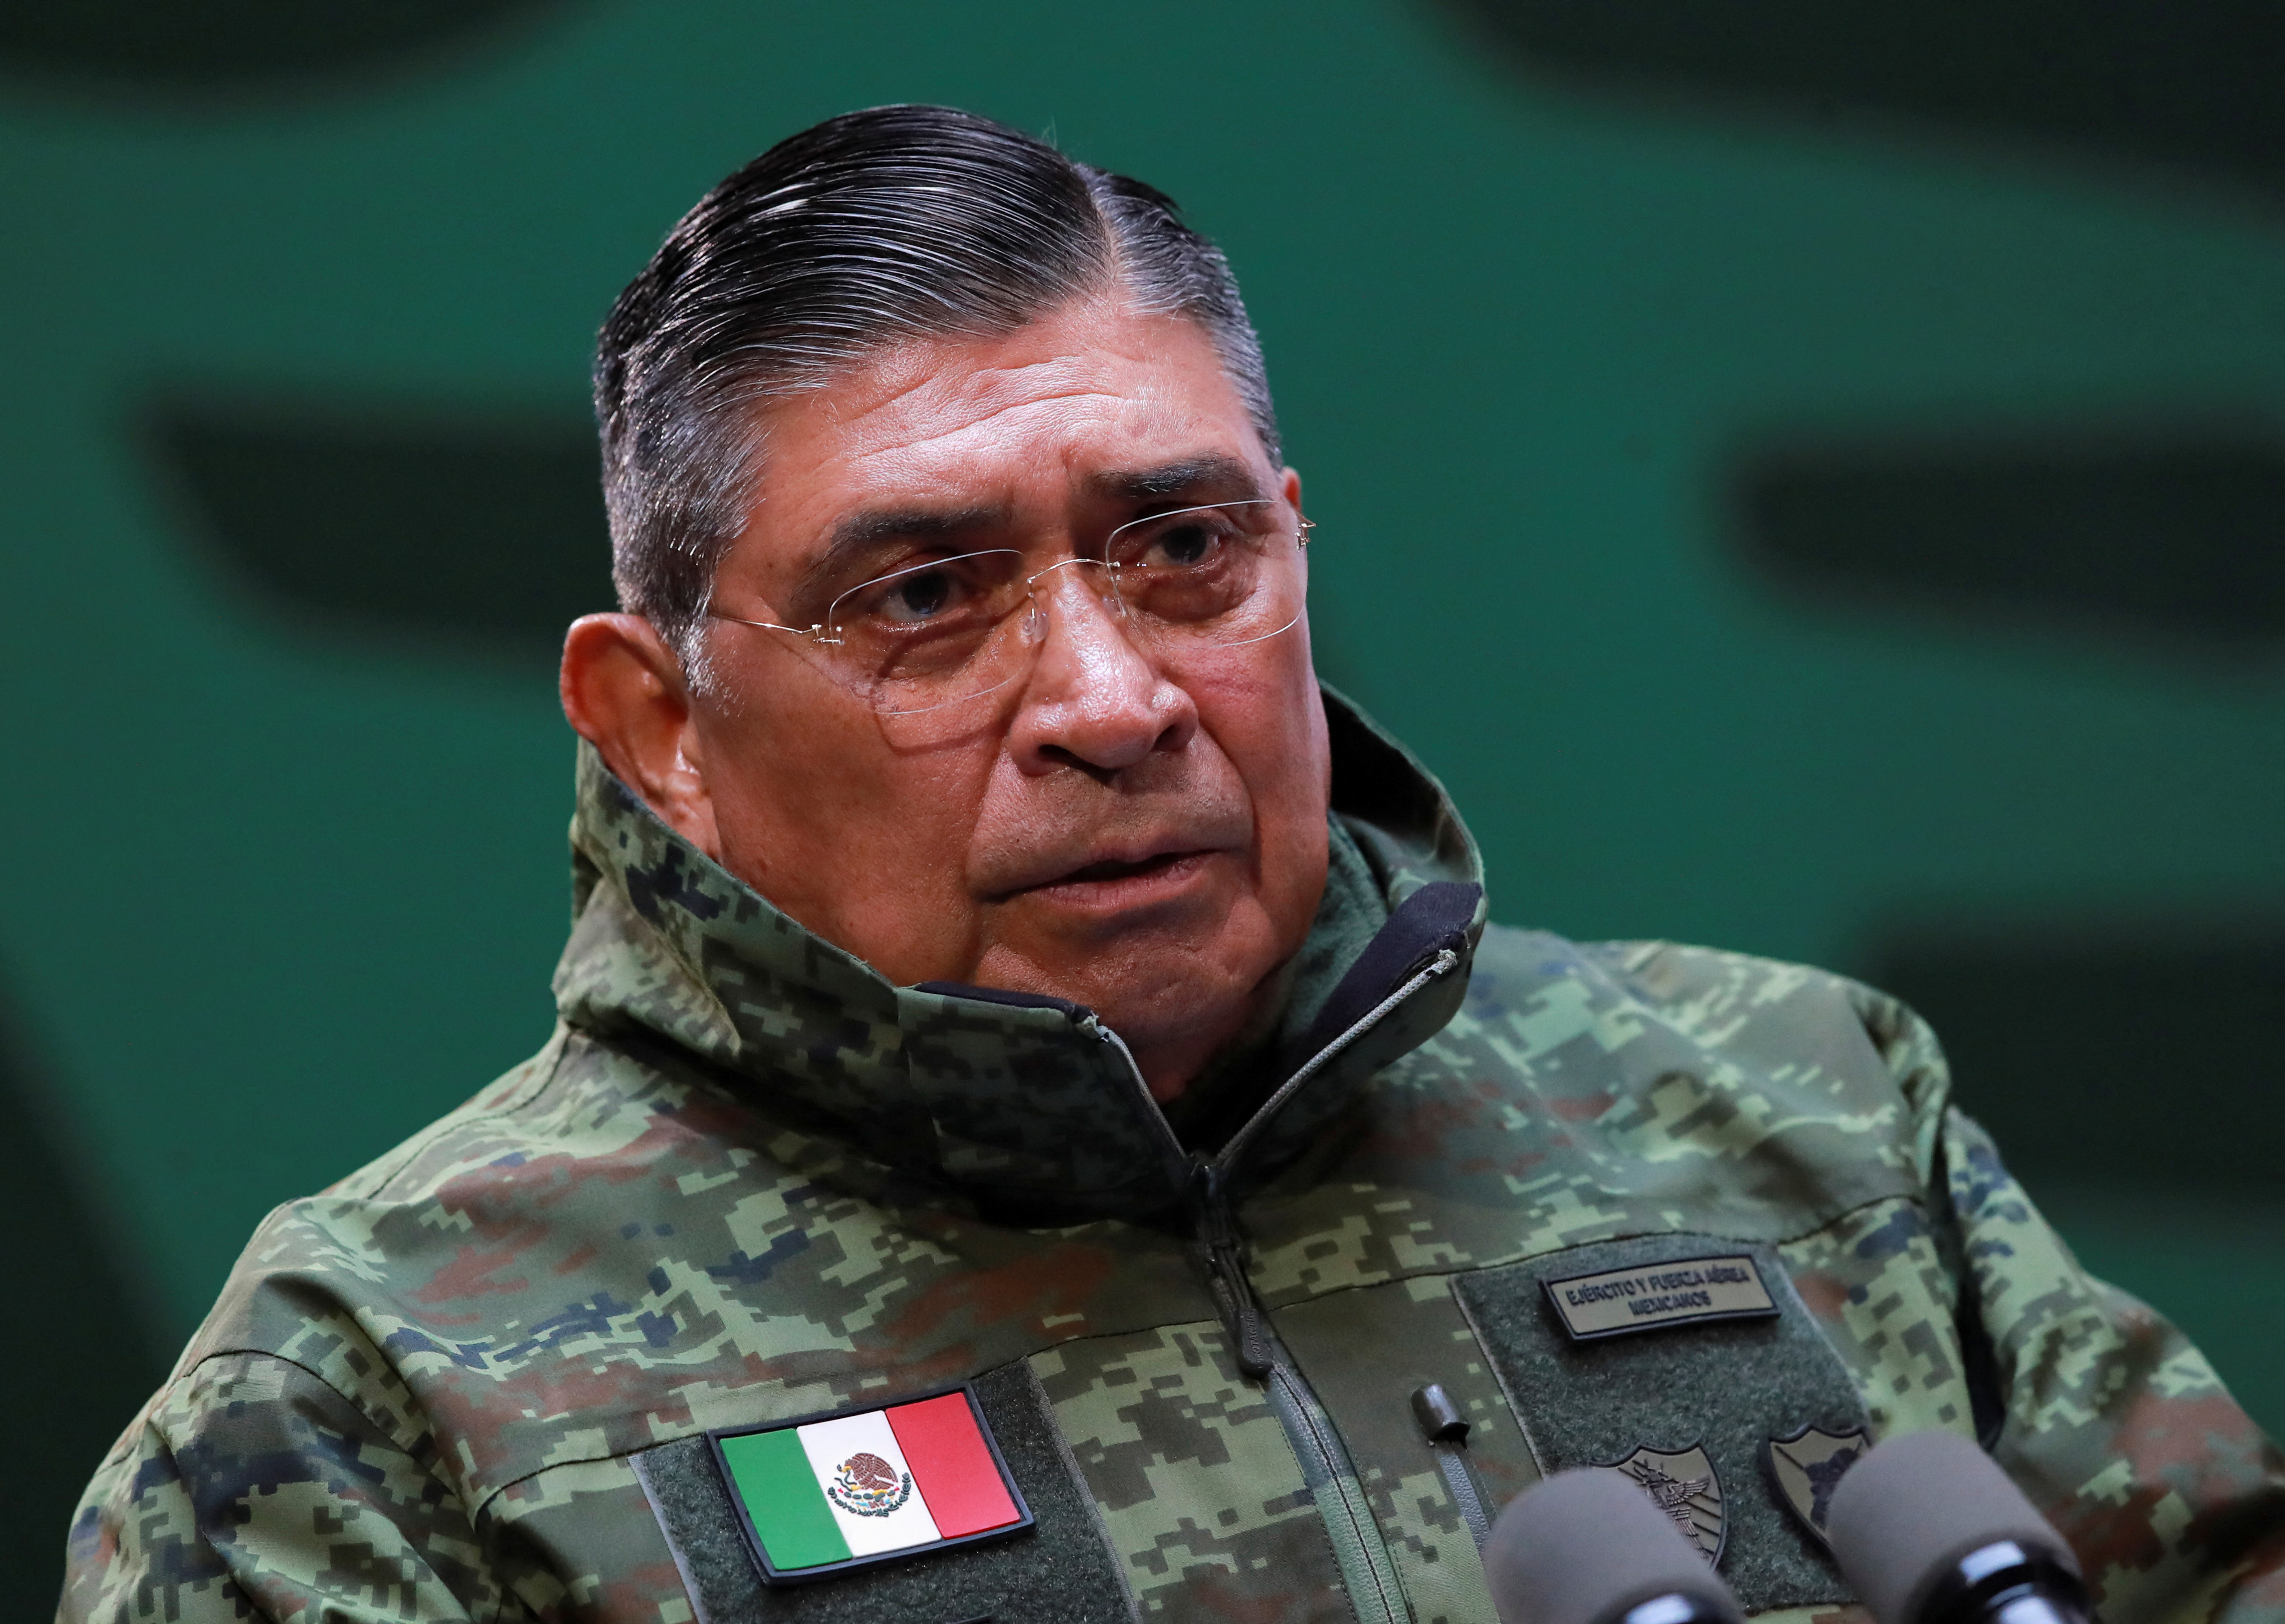 El general Luis Cresencio Sandoval informó que durante el fuerte operativo de las Fuerzas Armadas en Durango hubo detenciones y un herido, sin ser de gravedad. Foto: REUTERS/Henry Romero